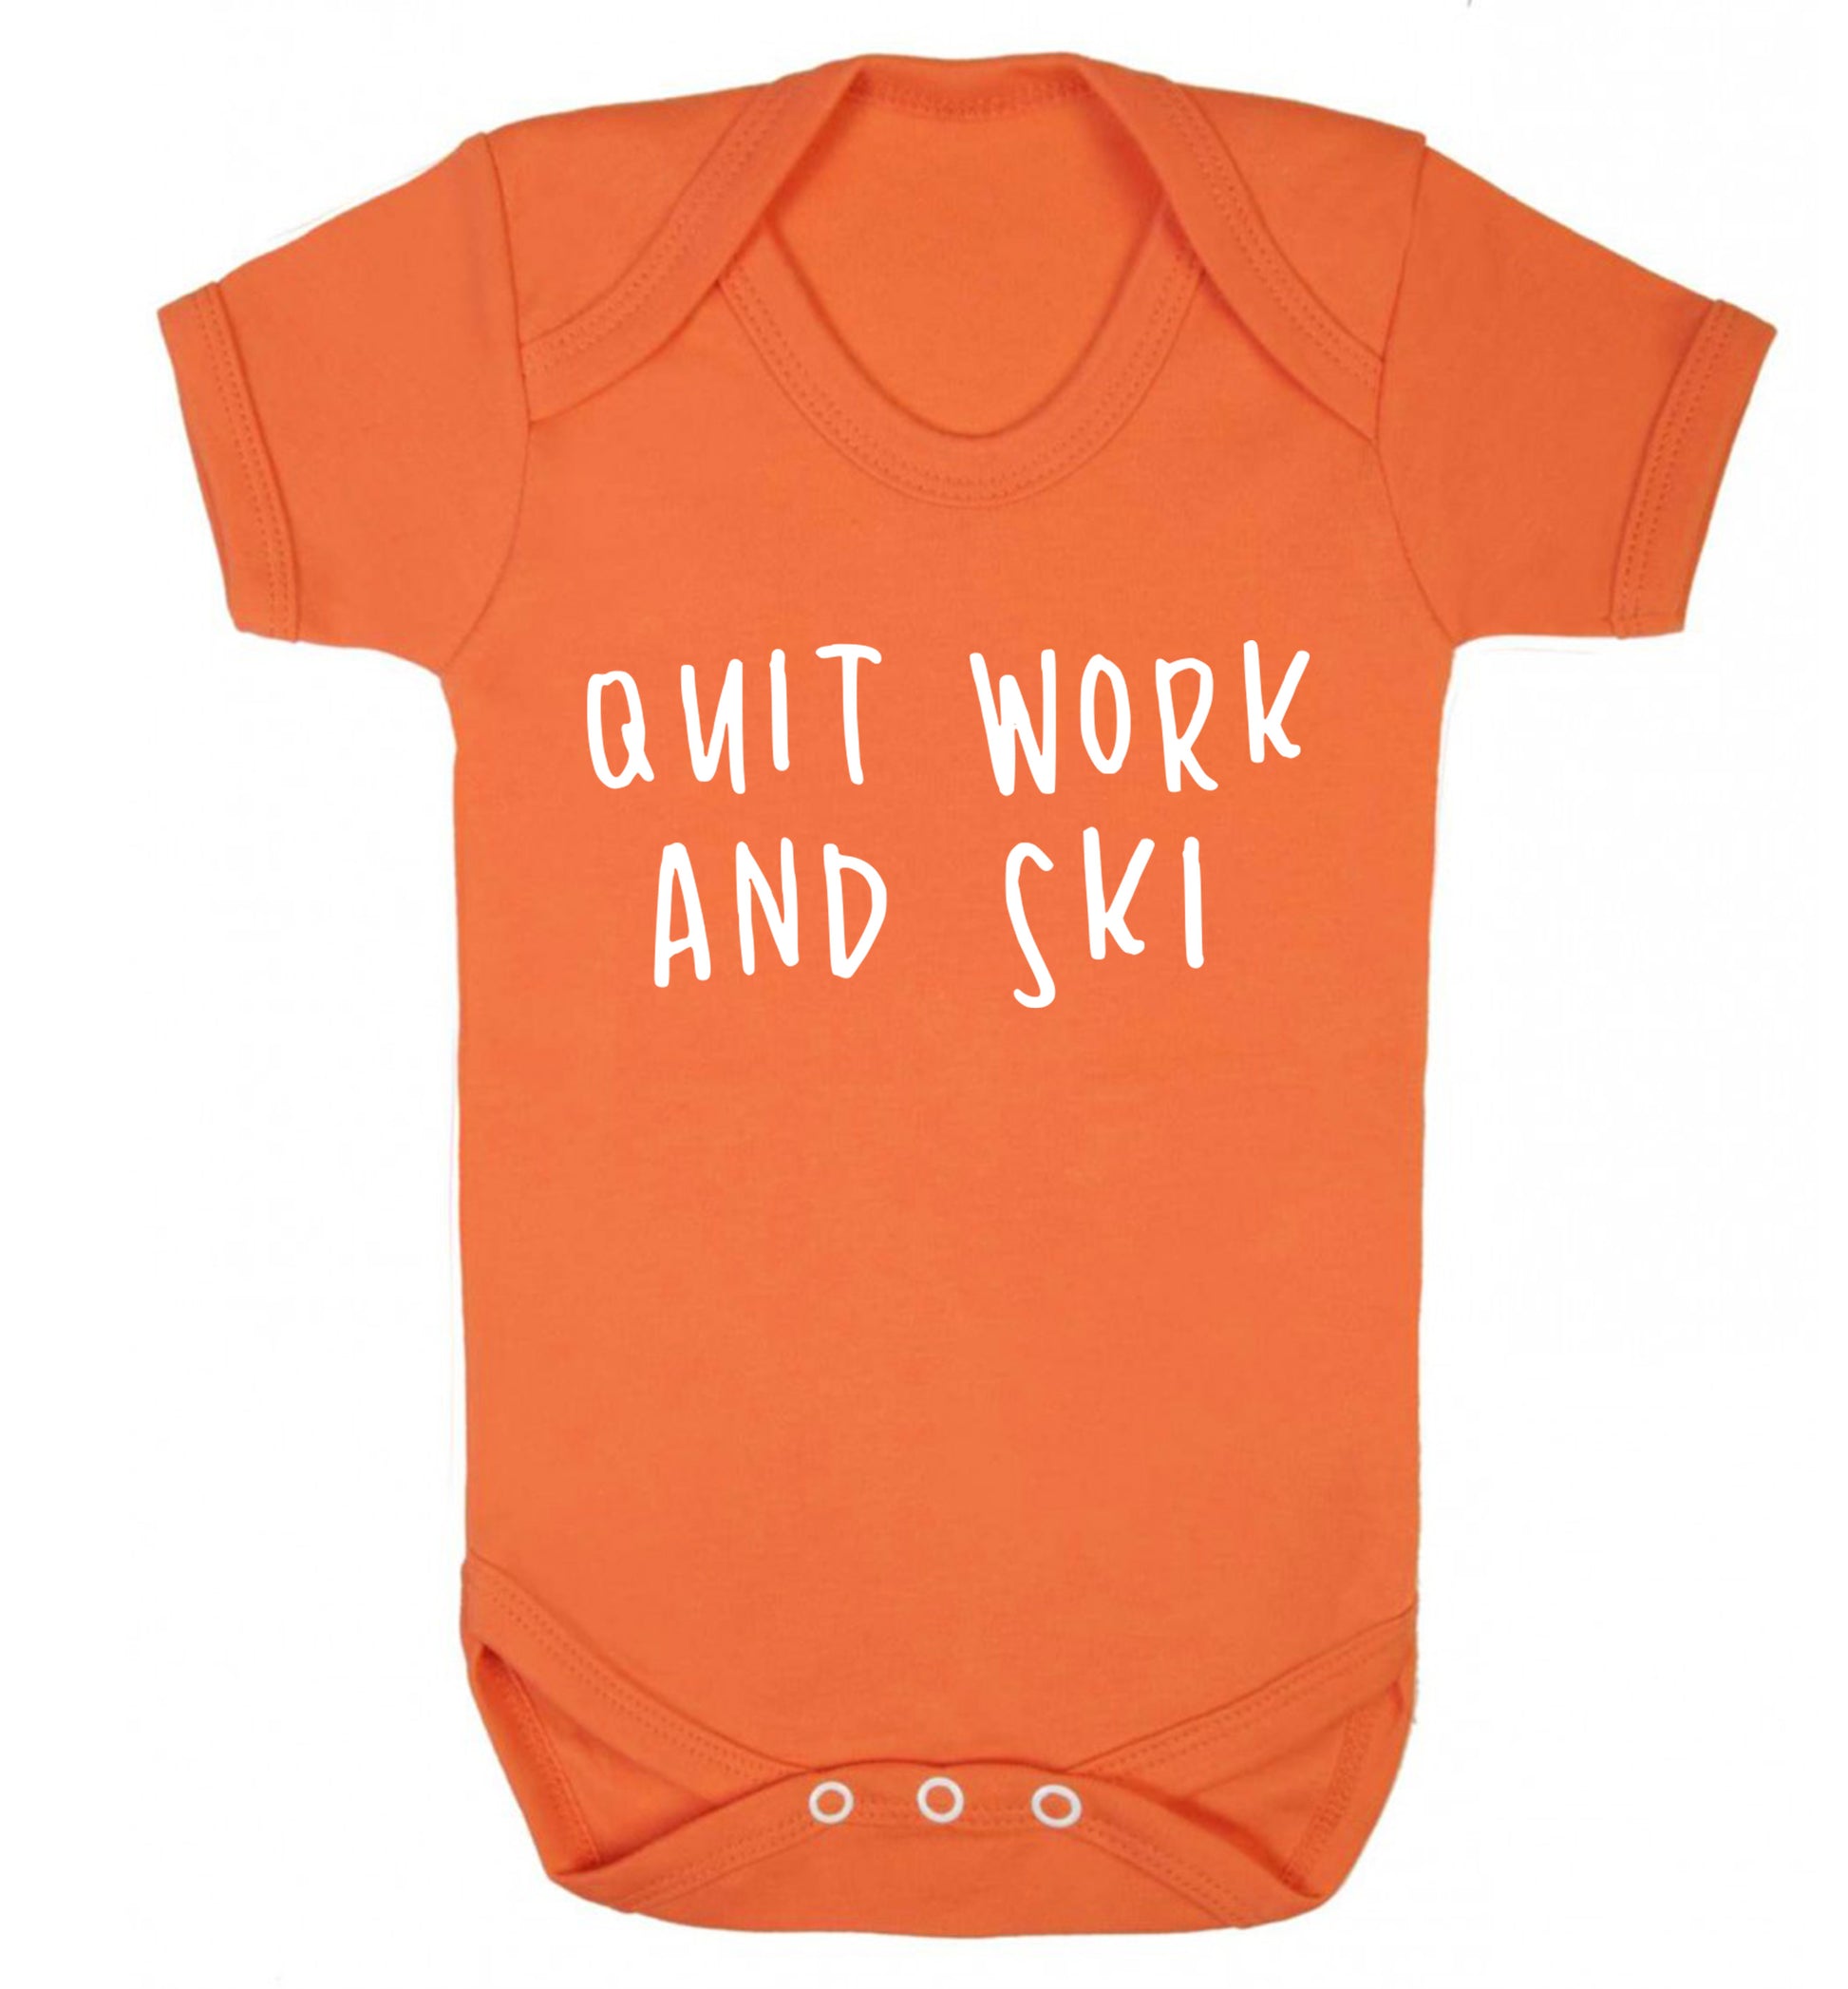 Quit work and ski Baby Vest orange 18-24 months